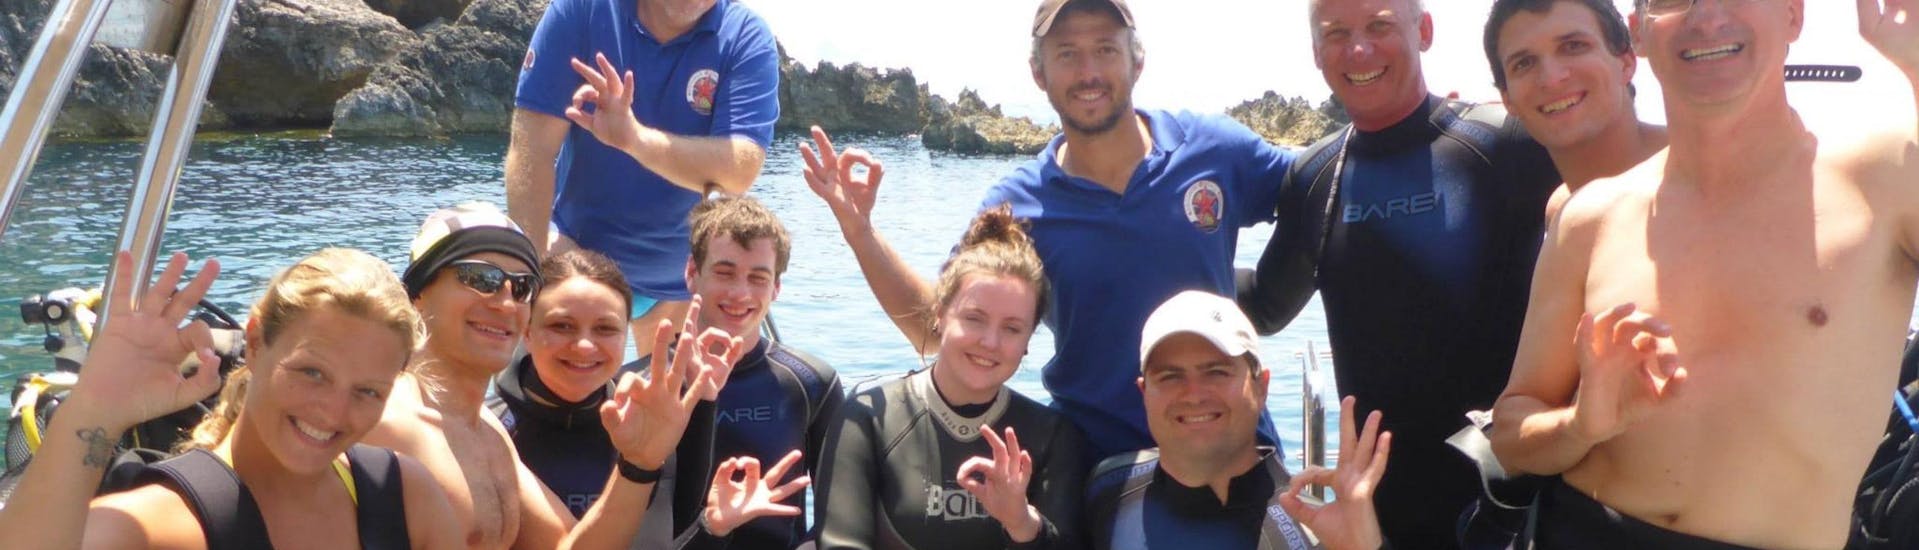 Eine Gruppe Taucher lächelt bei einer Tauchexkursion von Achilleon Diving Center Korfu für ein Gruppenfoto in die Kamera.